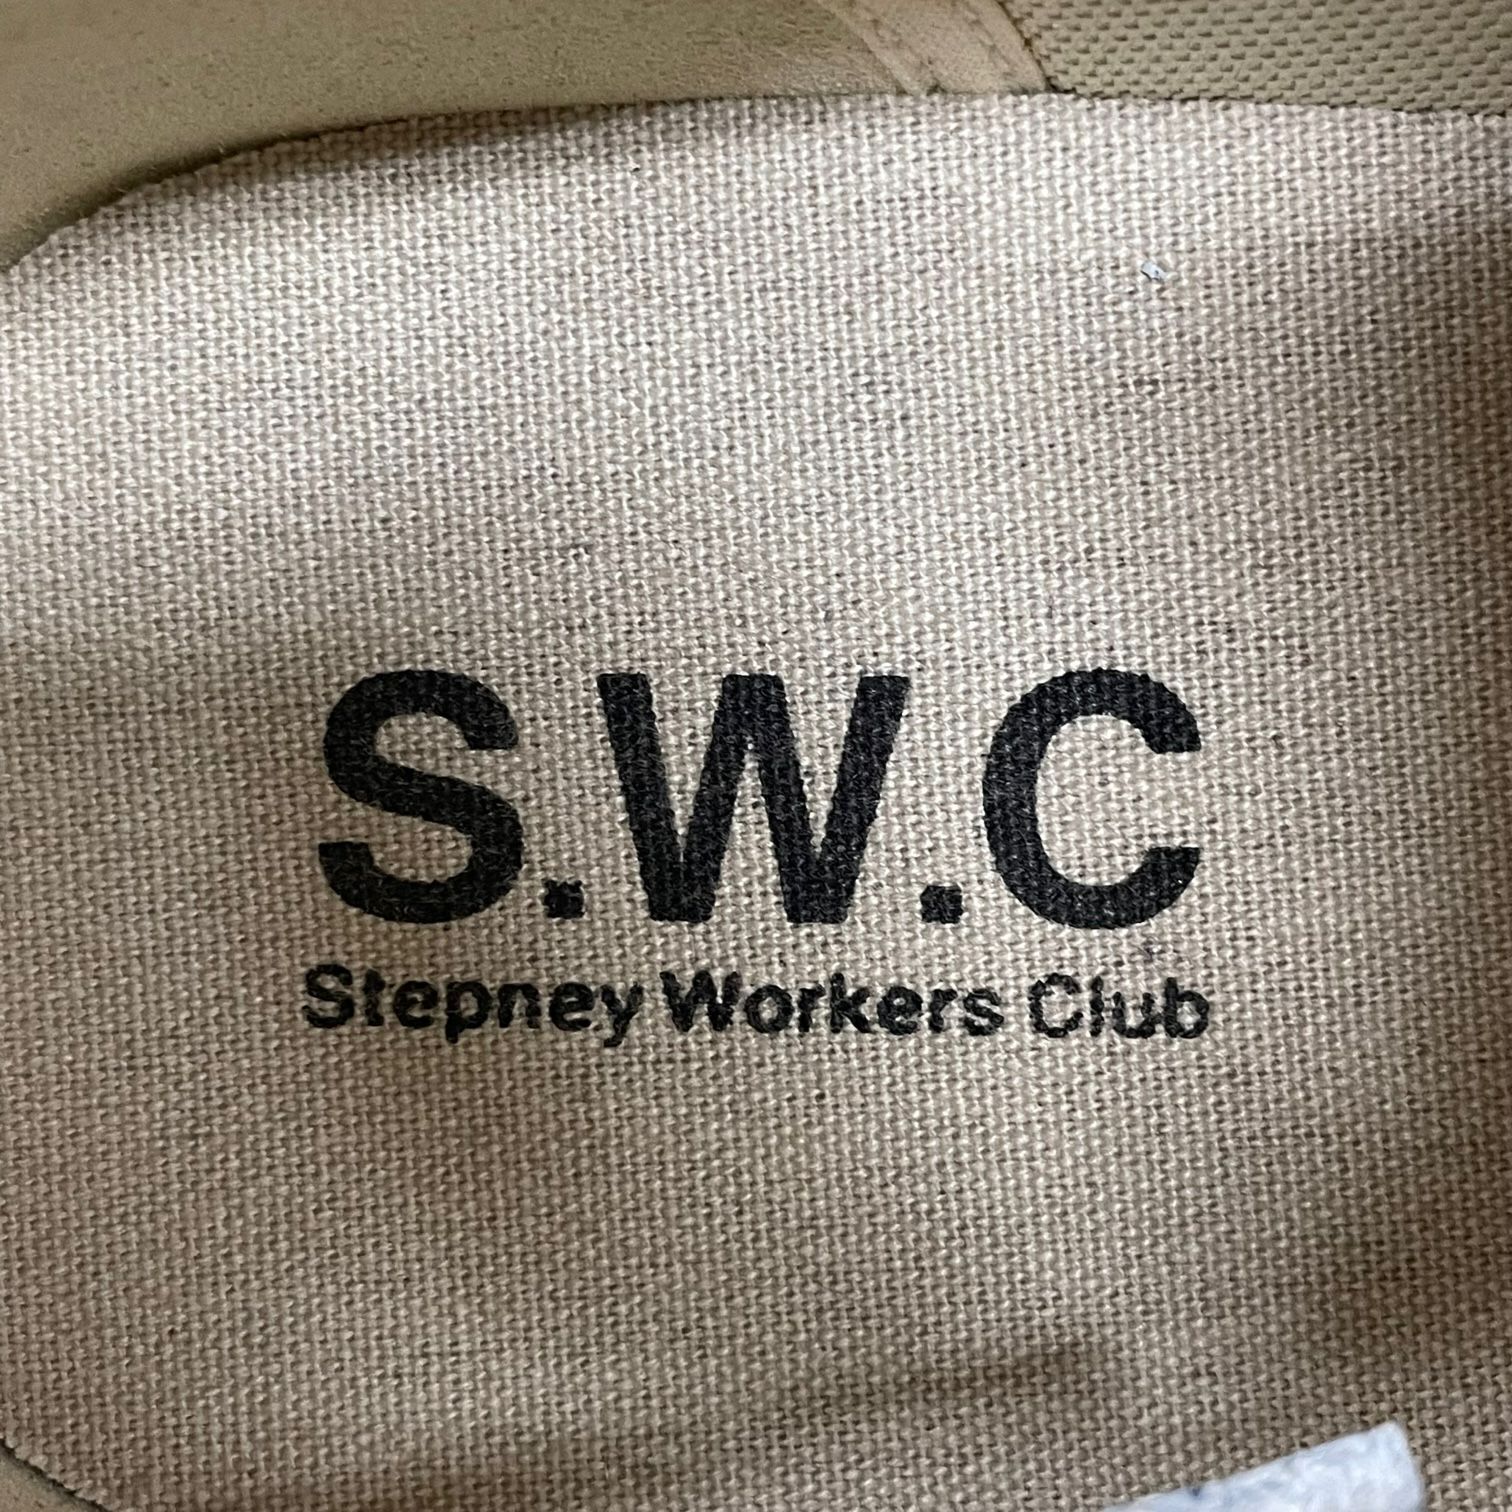 定価23100円 Stepney Workers Club 23SS S.W.C DELLOW S-STRIKE SUEDE